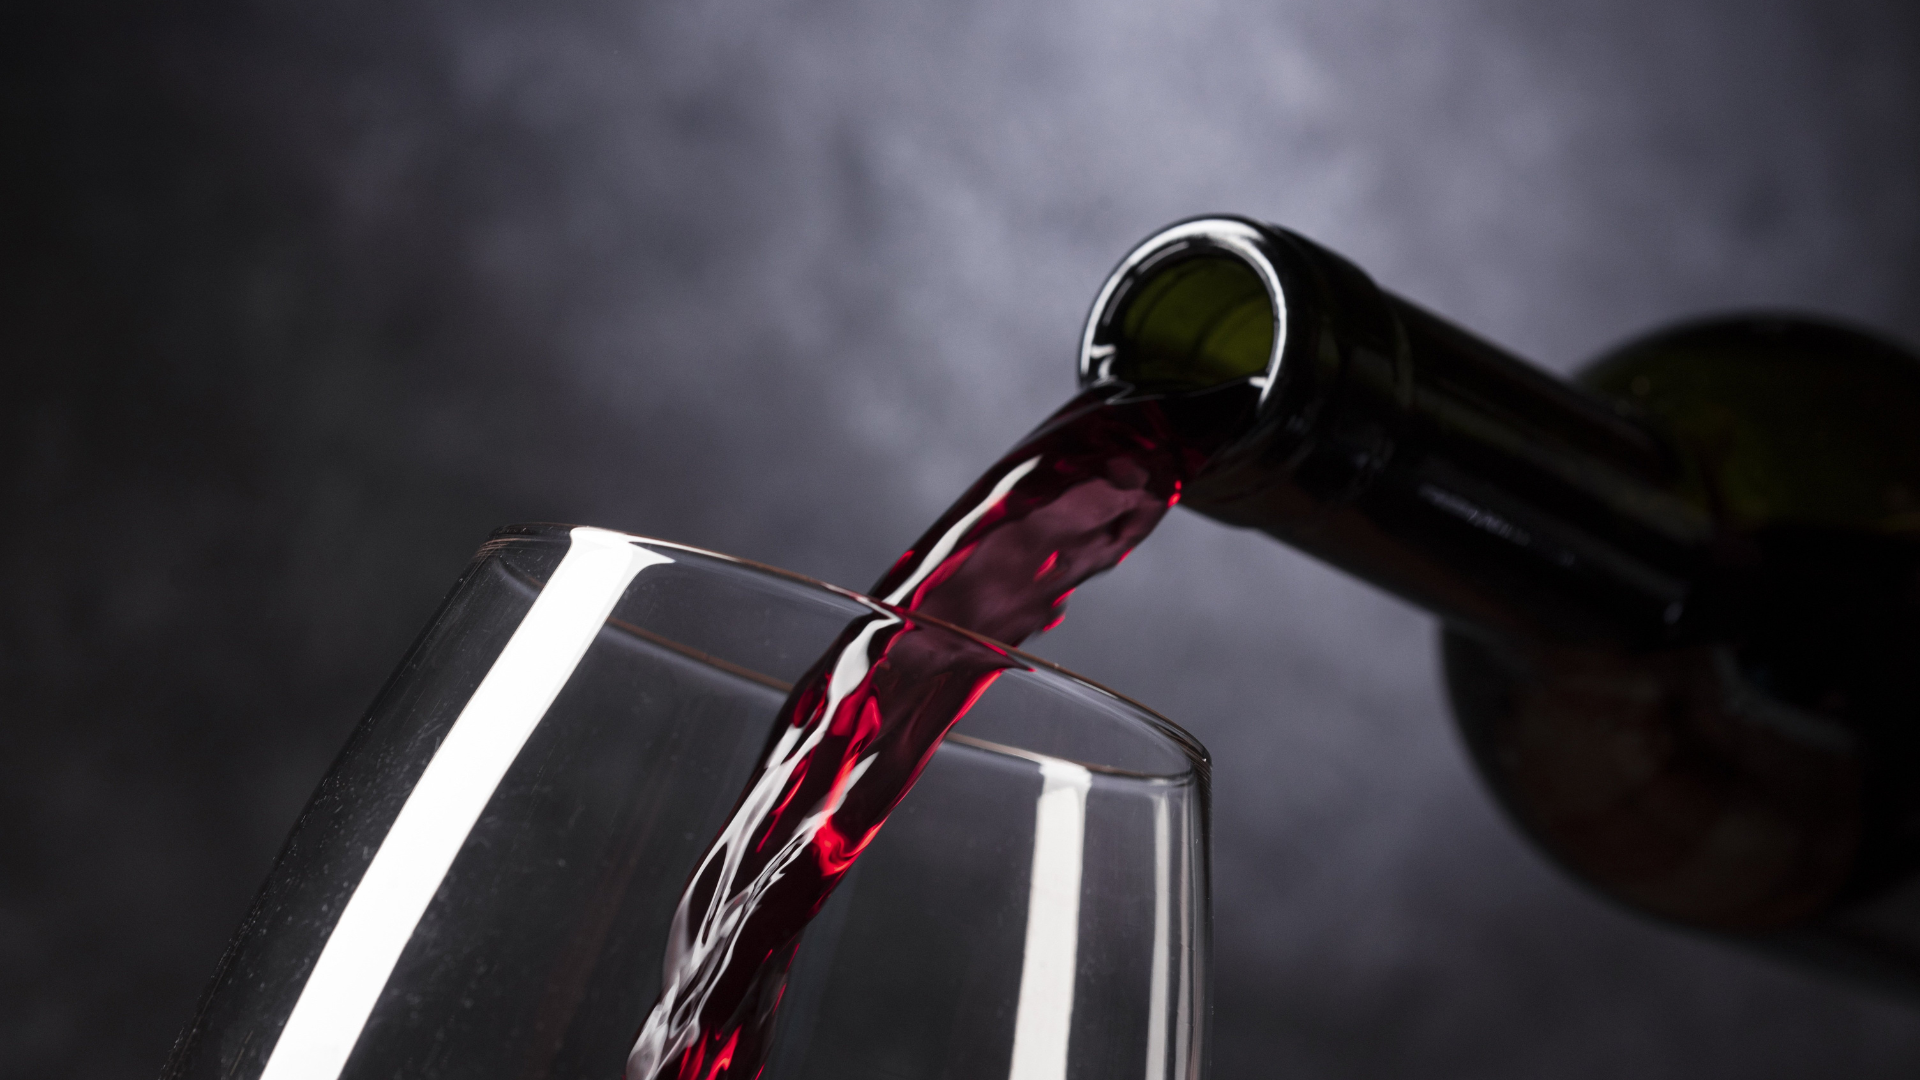 O vinho pode revelar traços da personalidade